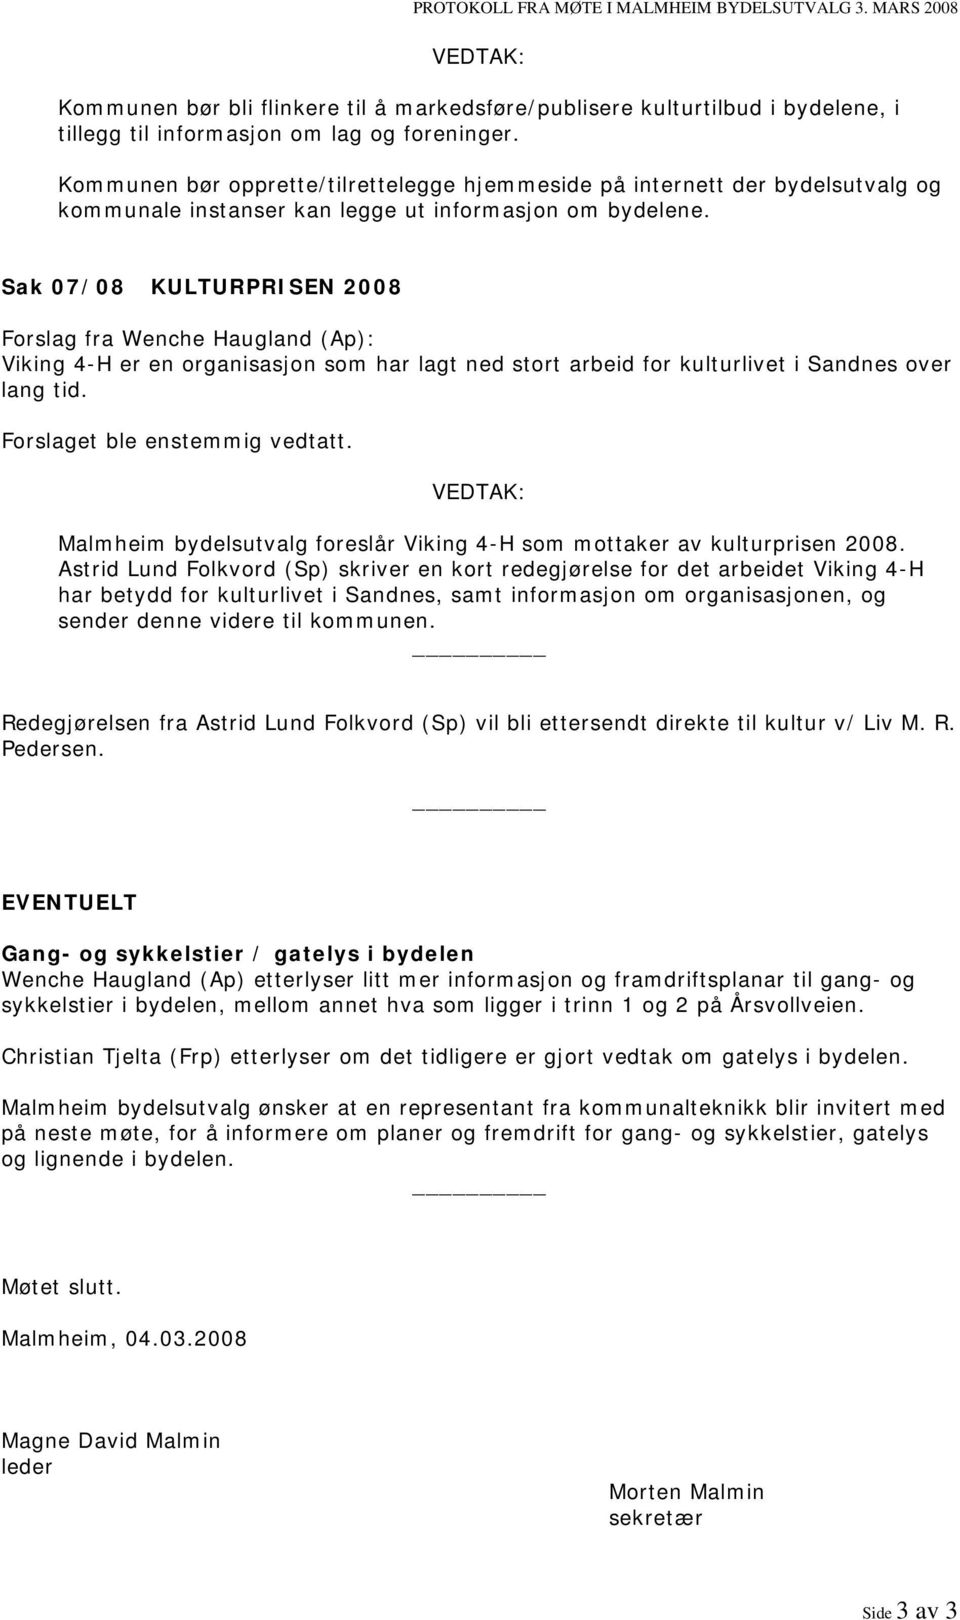 Sak 07/08 KULTURPRISEN 2008 Forslag fra Wenche Haugland (Ap): Viking 4-H er en organisasjon som har lagt ned stort arbeid for kulturlivet i Sandnes over lang tid. Forslaget ble enstemmig vedtatt.